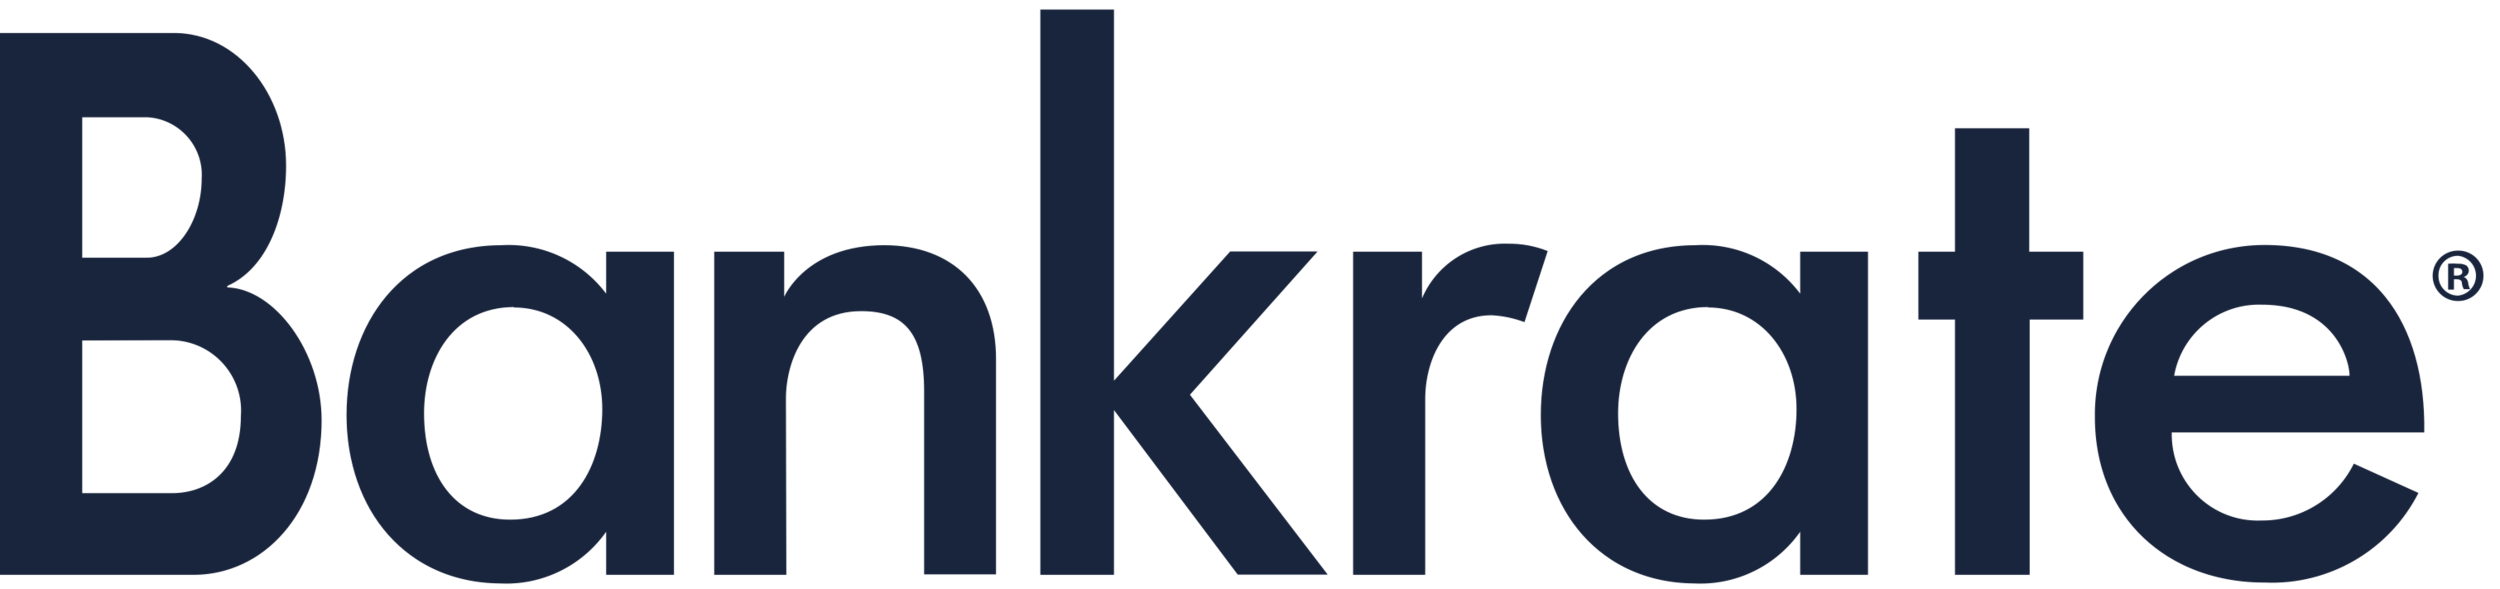 Bankrate-logo.png